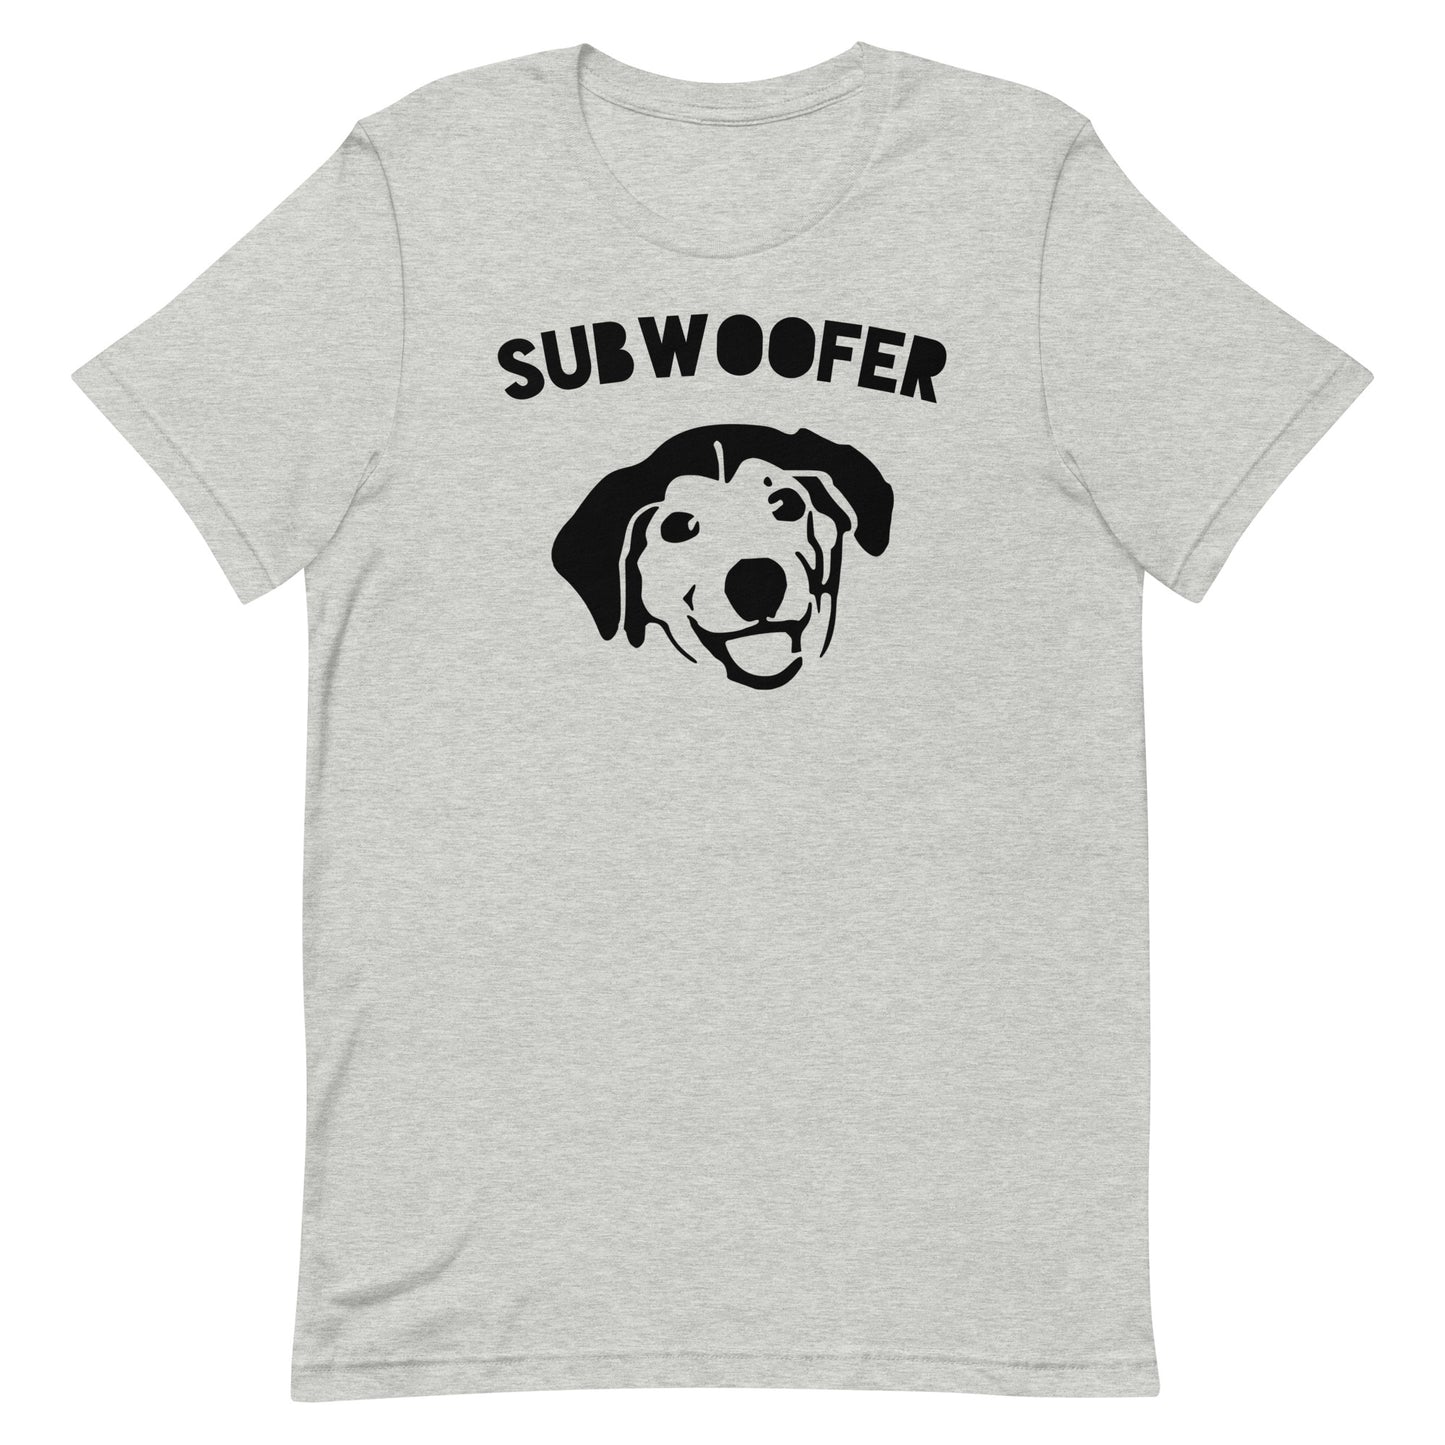 Subwoofer 2 Shirt